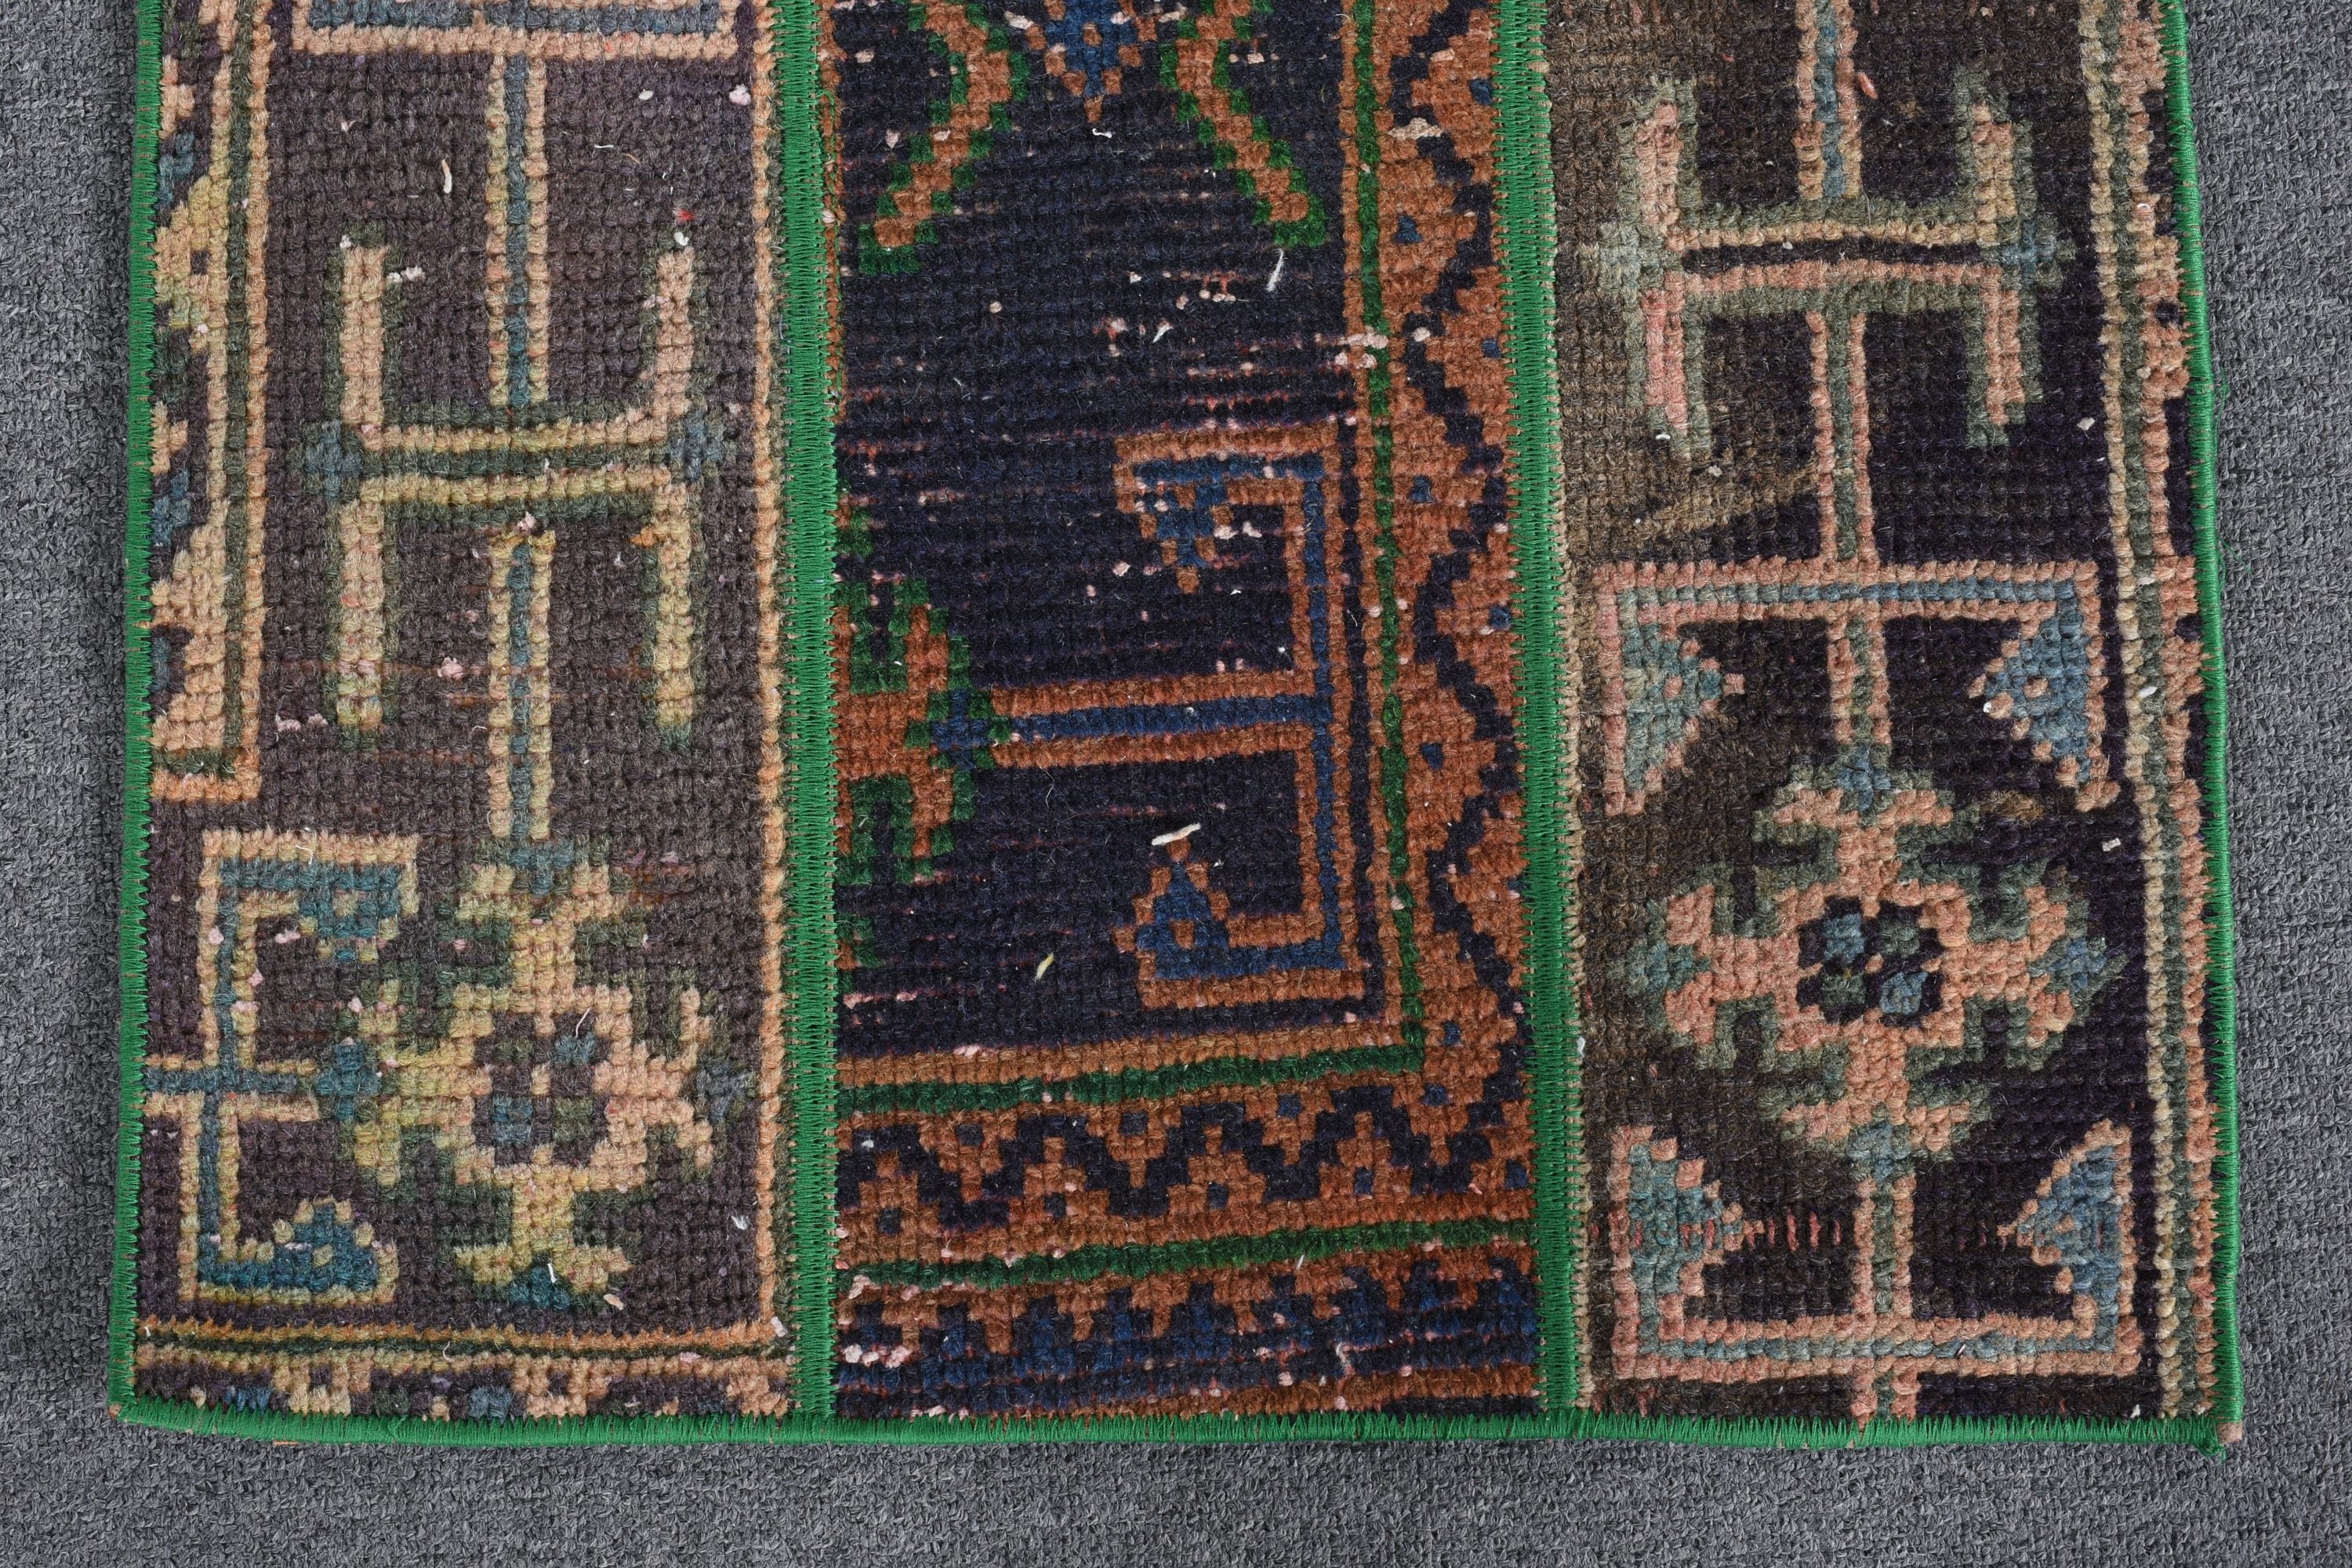 Dorm Rug, Turkish Rug, Entry Rug, Floor Rugs, Oriental Rugs, Wall Hanging Rug, 1.7x2.7 ft Small Rug, Vintage Rug, Green Anatolian Rug